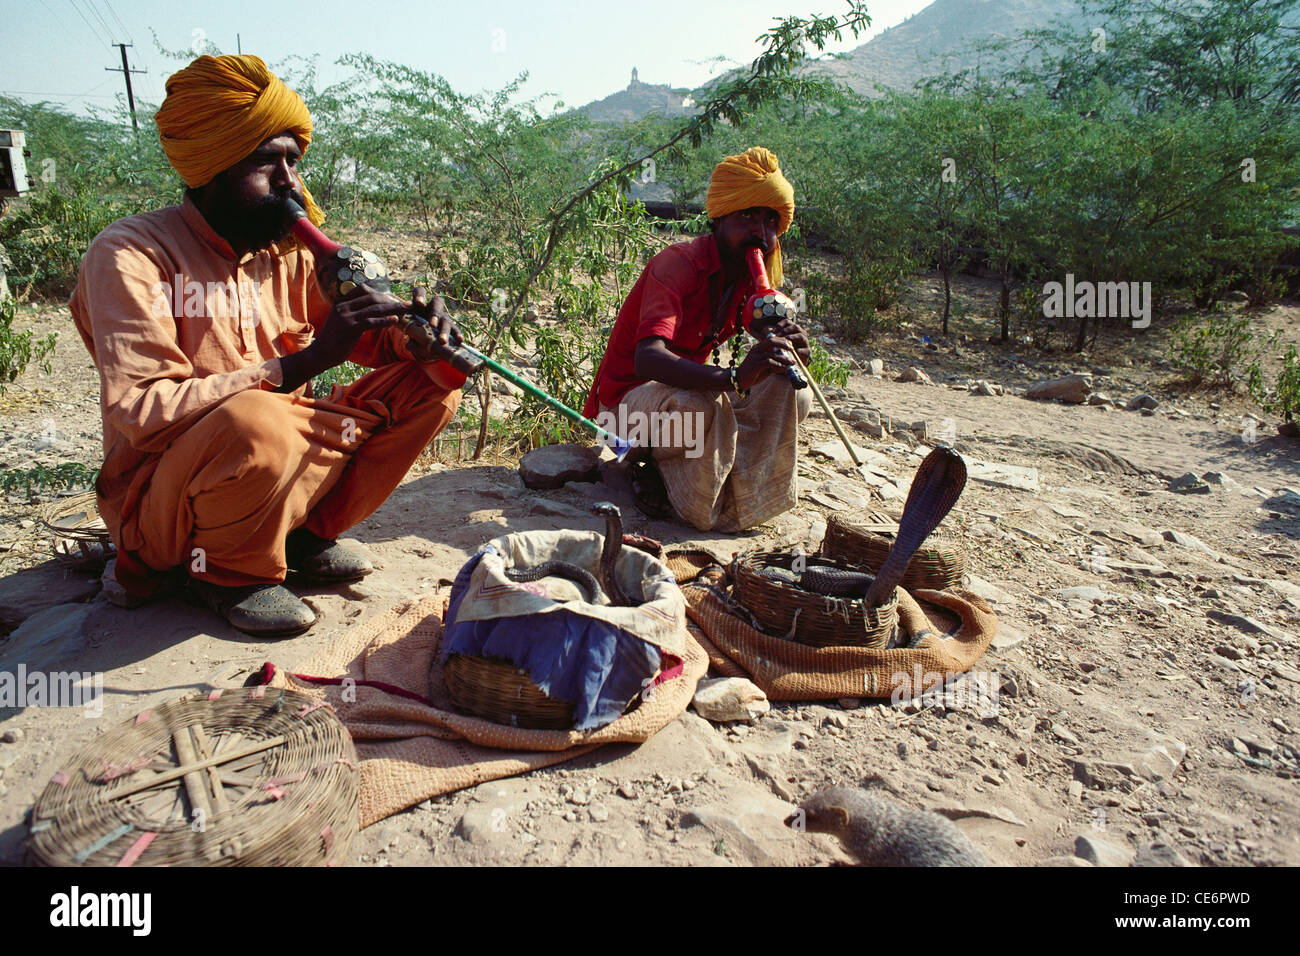 Serpent charmant par deux charmers indiens jouant l'instrument de musique de vent pungi ; jaipur ; rajasthan ; inde ; asie Banque D'Images